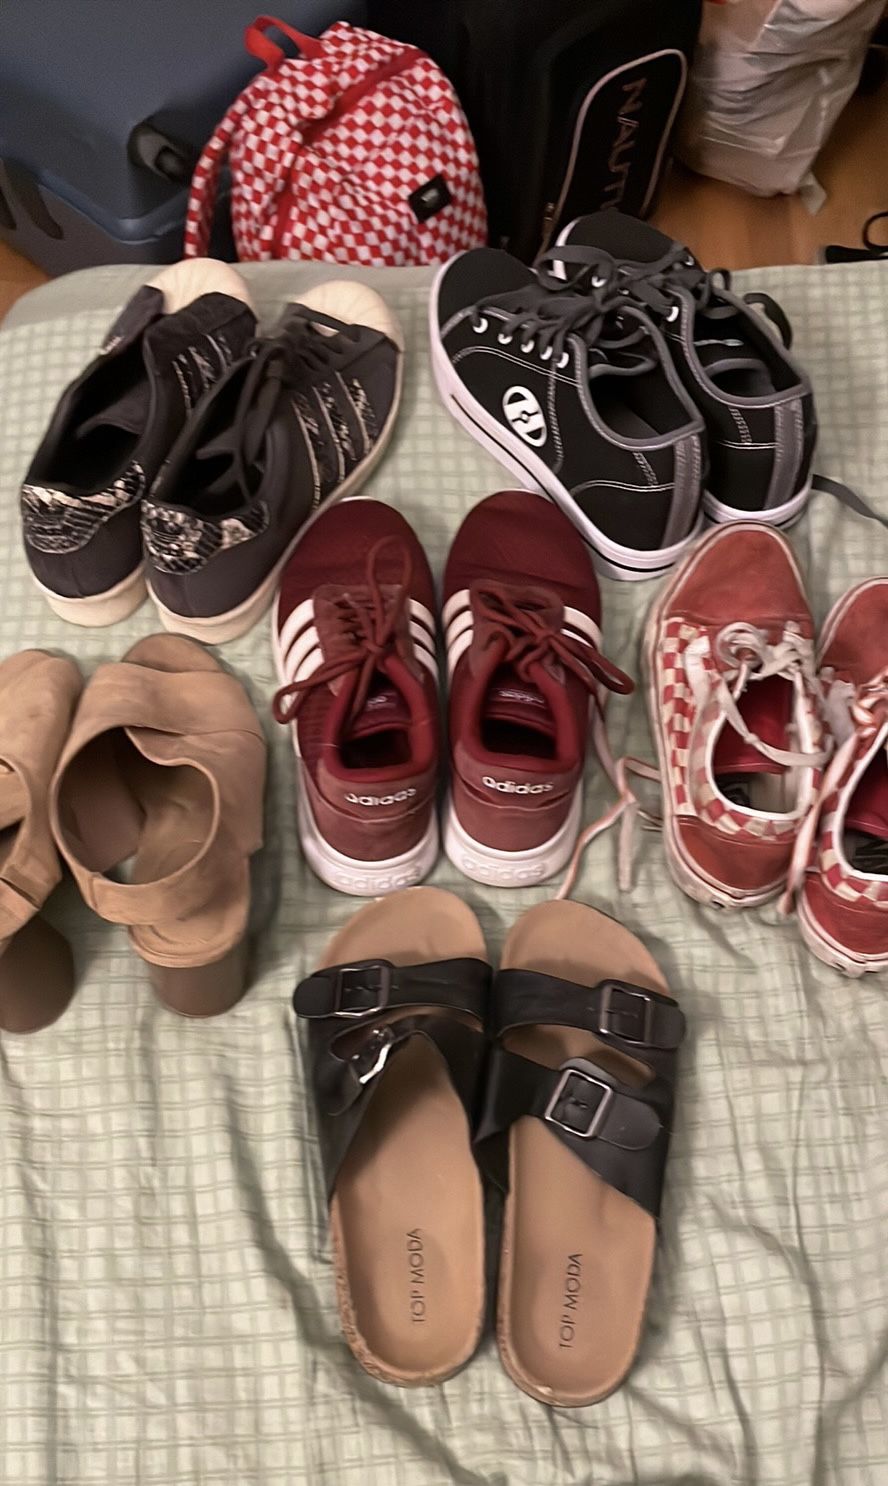 Shoes, Adidas, Vans, Heelys, High heels, Slippers